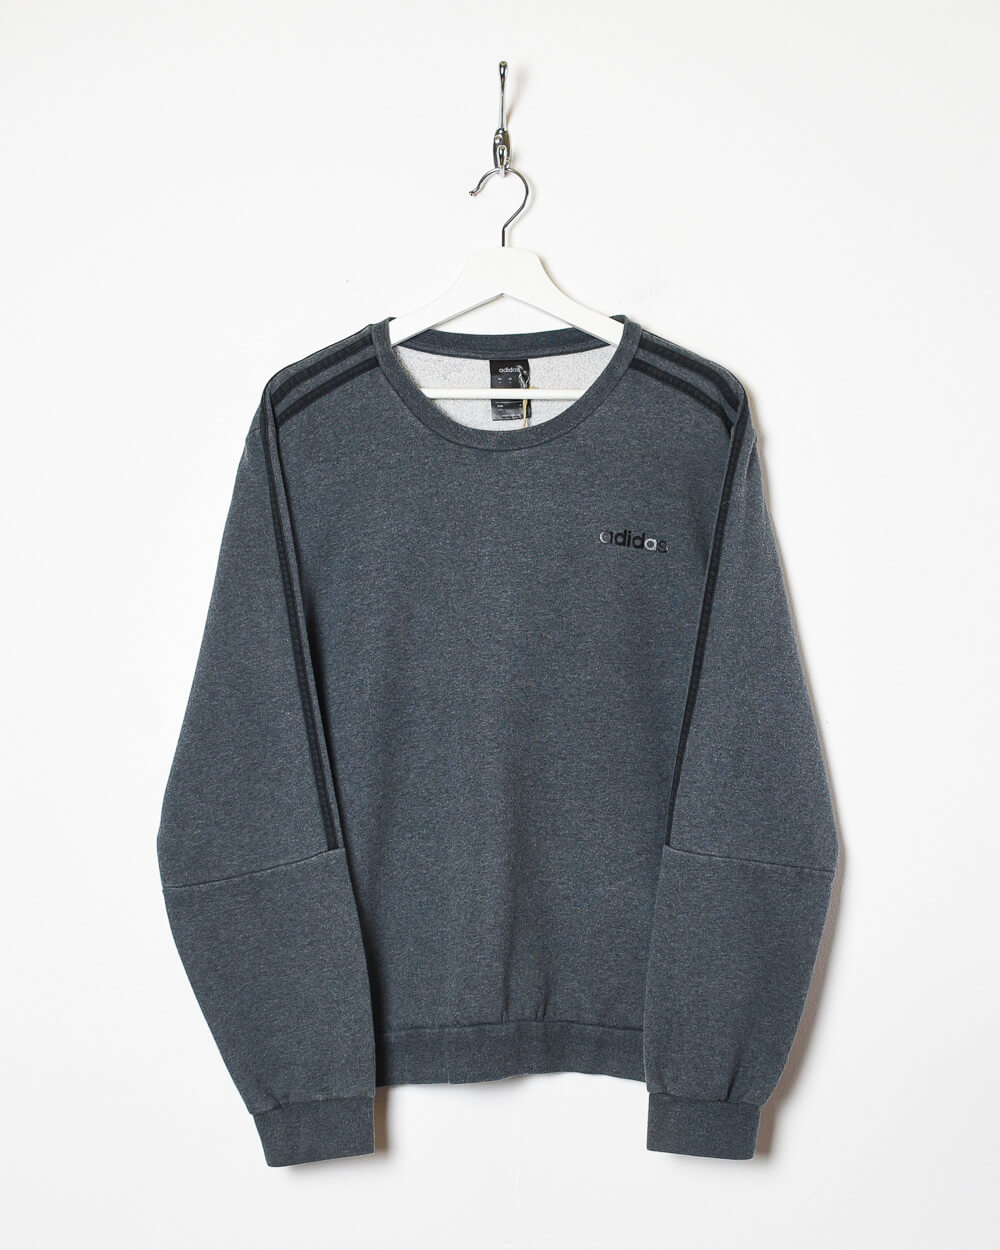 Grey Adidas Sweatshirt - Small